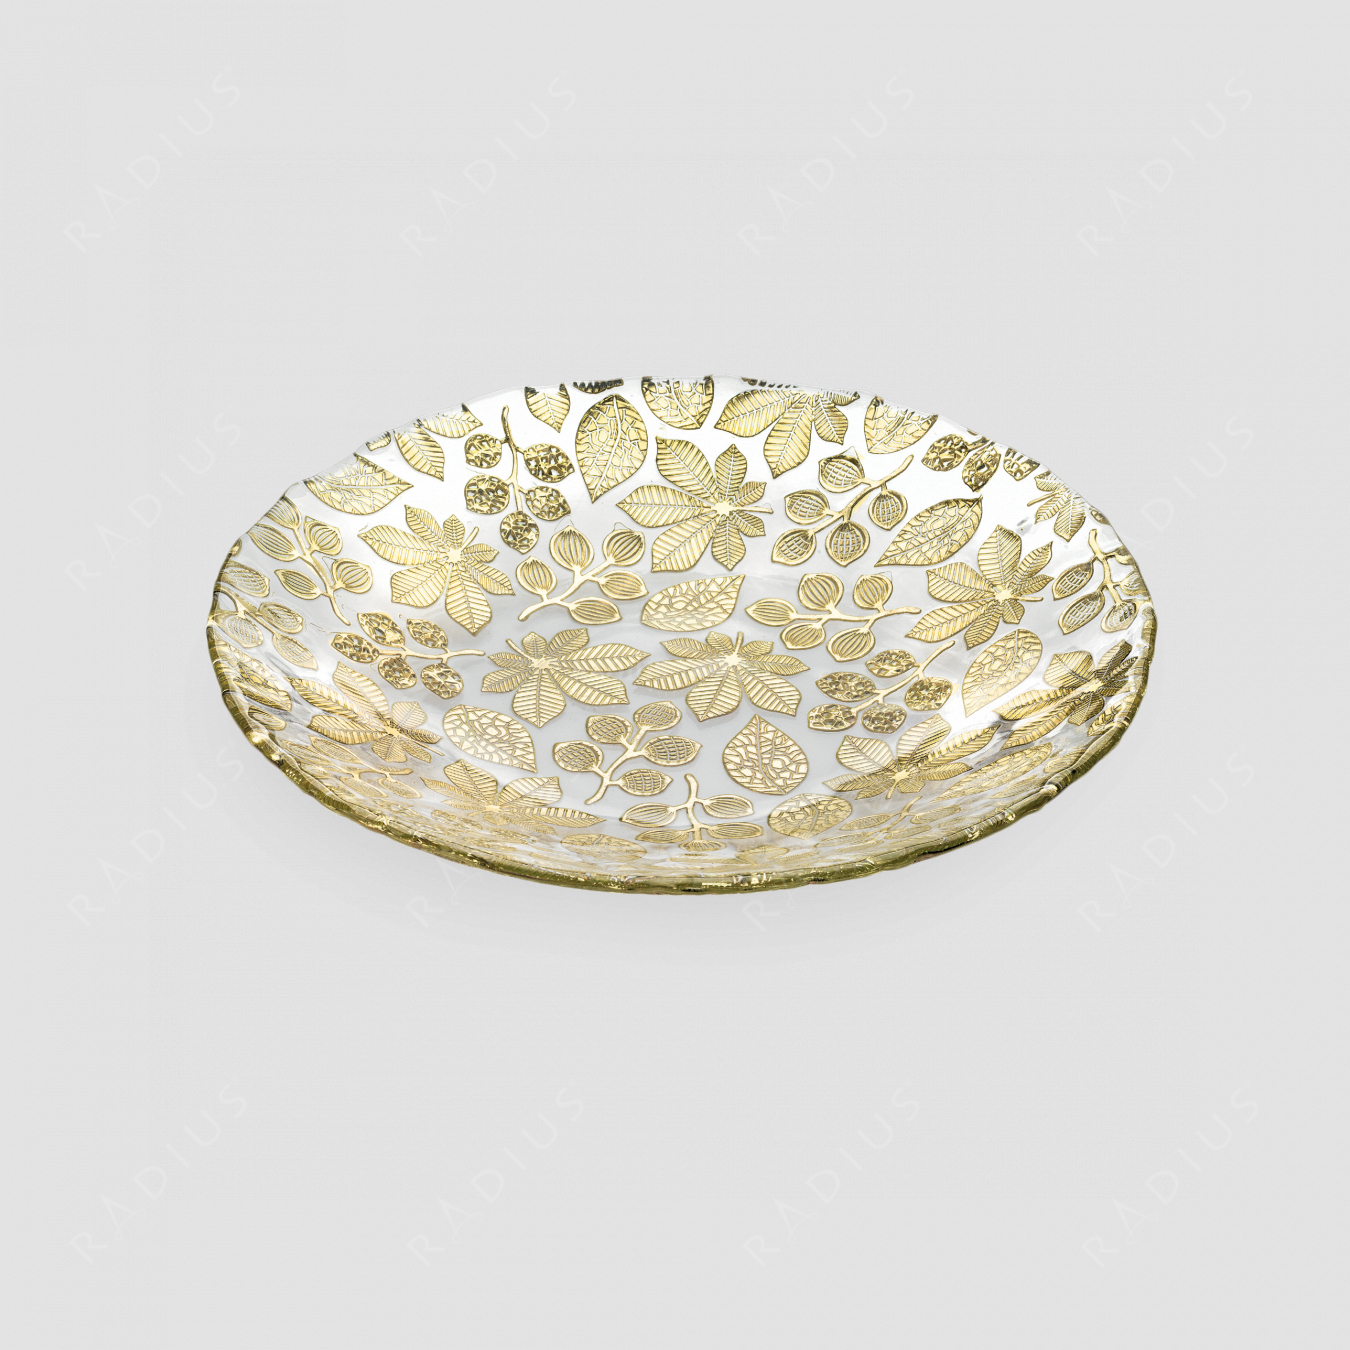 Блюдо глубокое, диаметр: 41 см, высота: 6,5 см, материал: стекло, цвет: золото, серия Naturalia, IVV (Italy), Италия